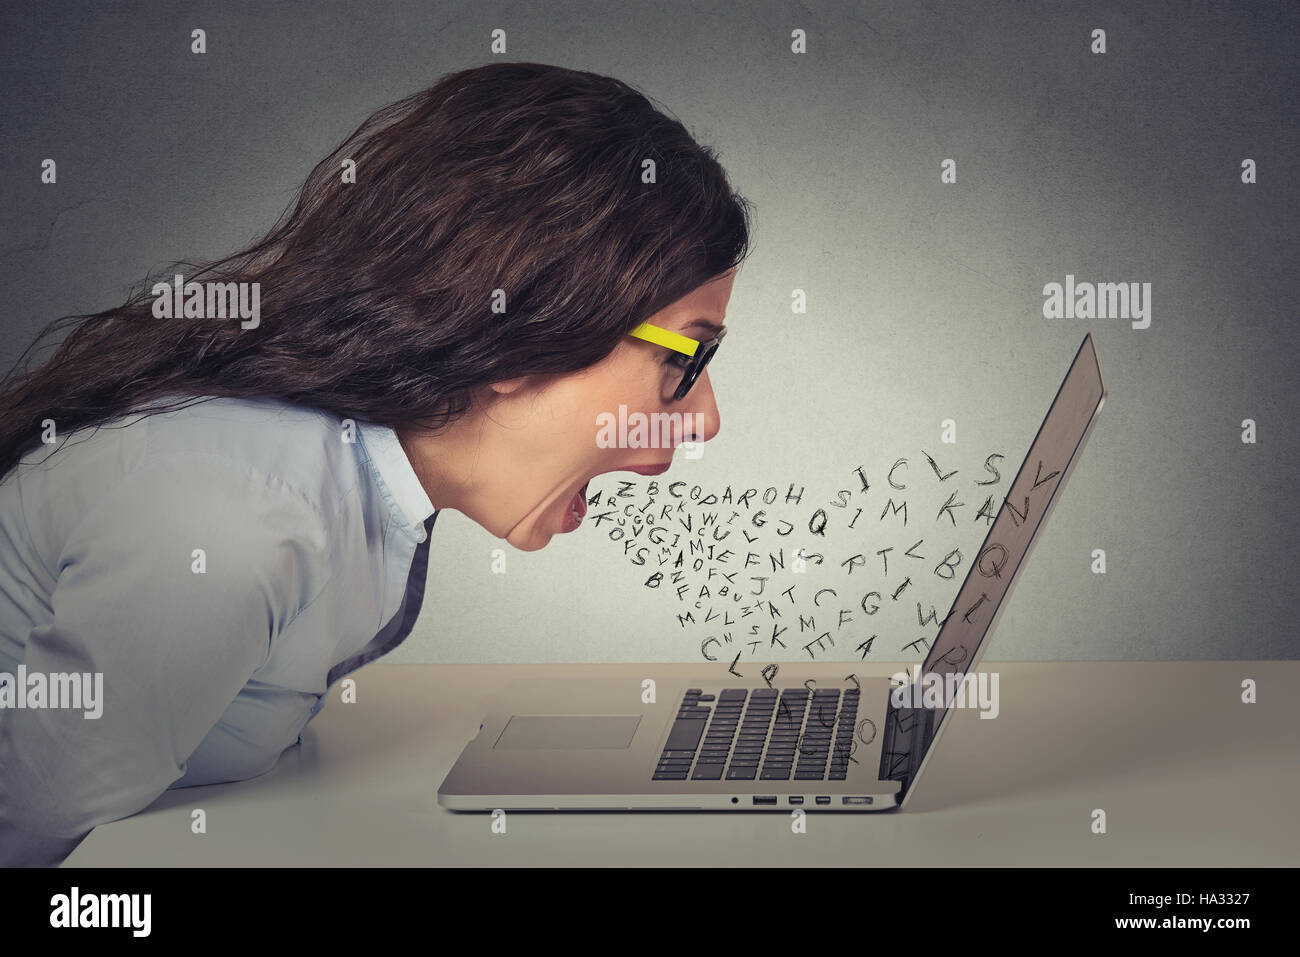 Furieuse colère businesswoman working on computer, hurlant de lettre de l'alphabet qui sortent de la bouche ouverte. Des émotions négatives, les expressions du visage, Banque D'Images